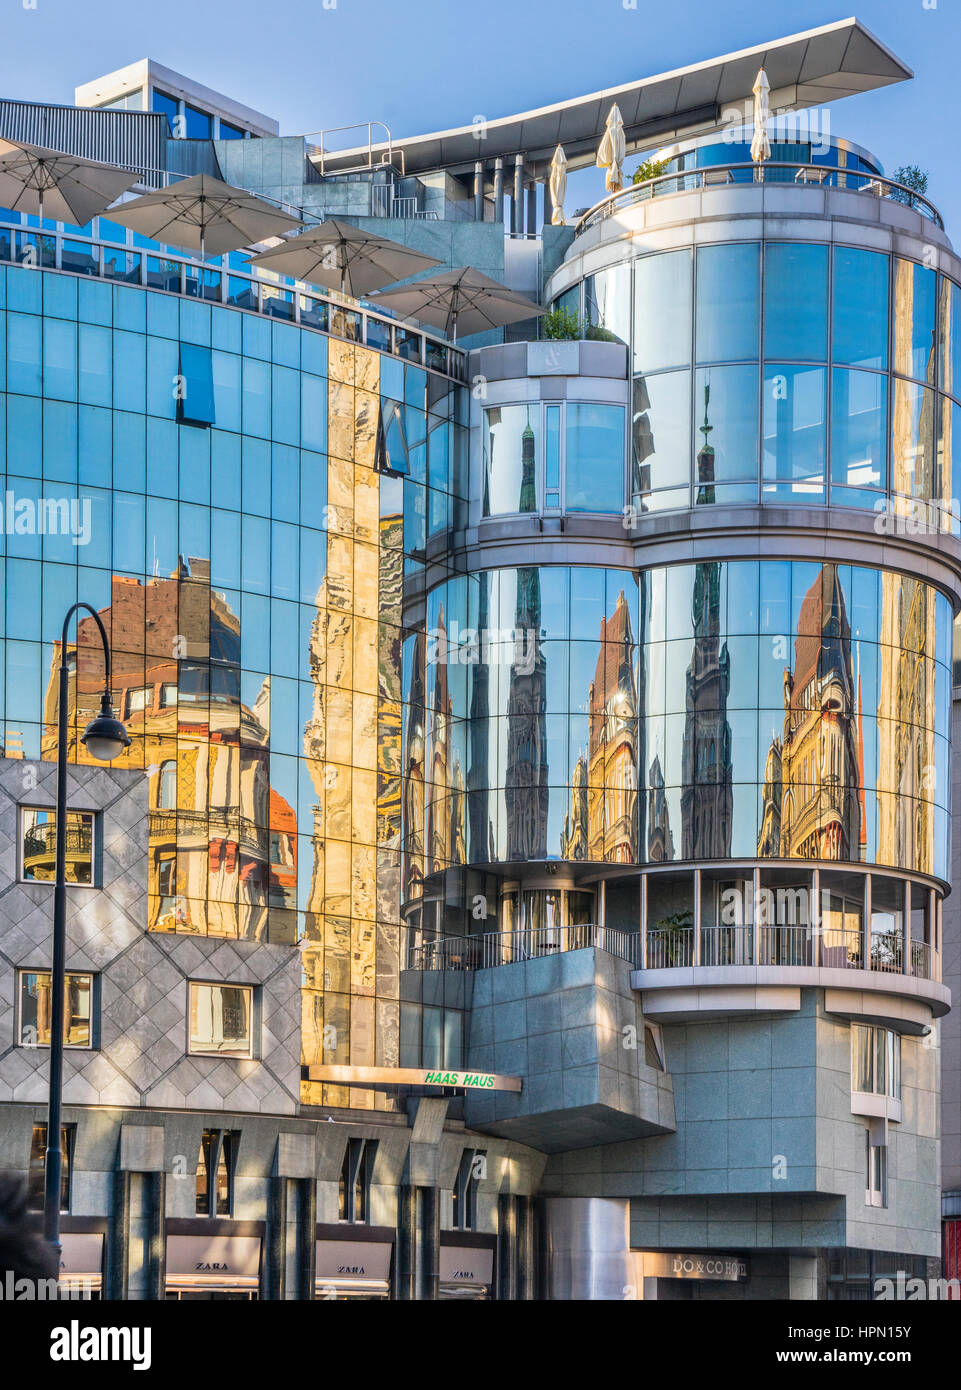 Austria, Viena, vista de la postmoderna Haas House en Stephansplatz formando un fuerte contraste con la adyacente Stephansdom Foto de stock